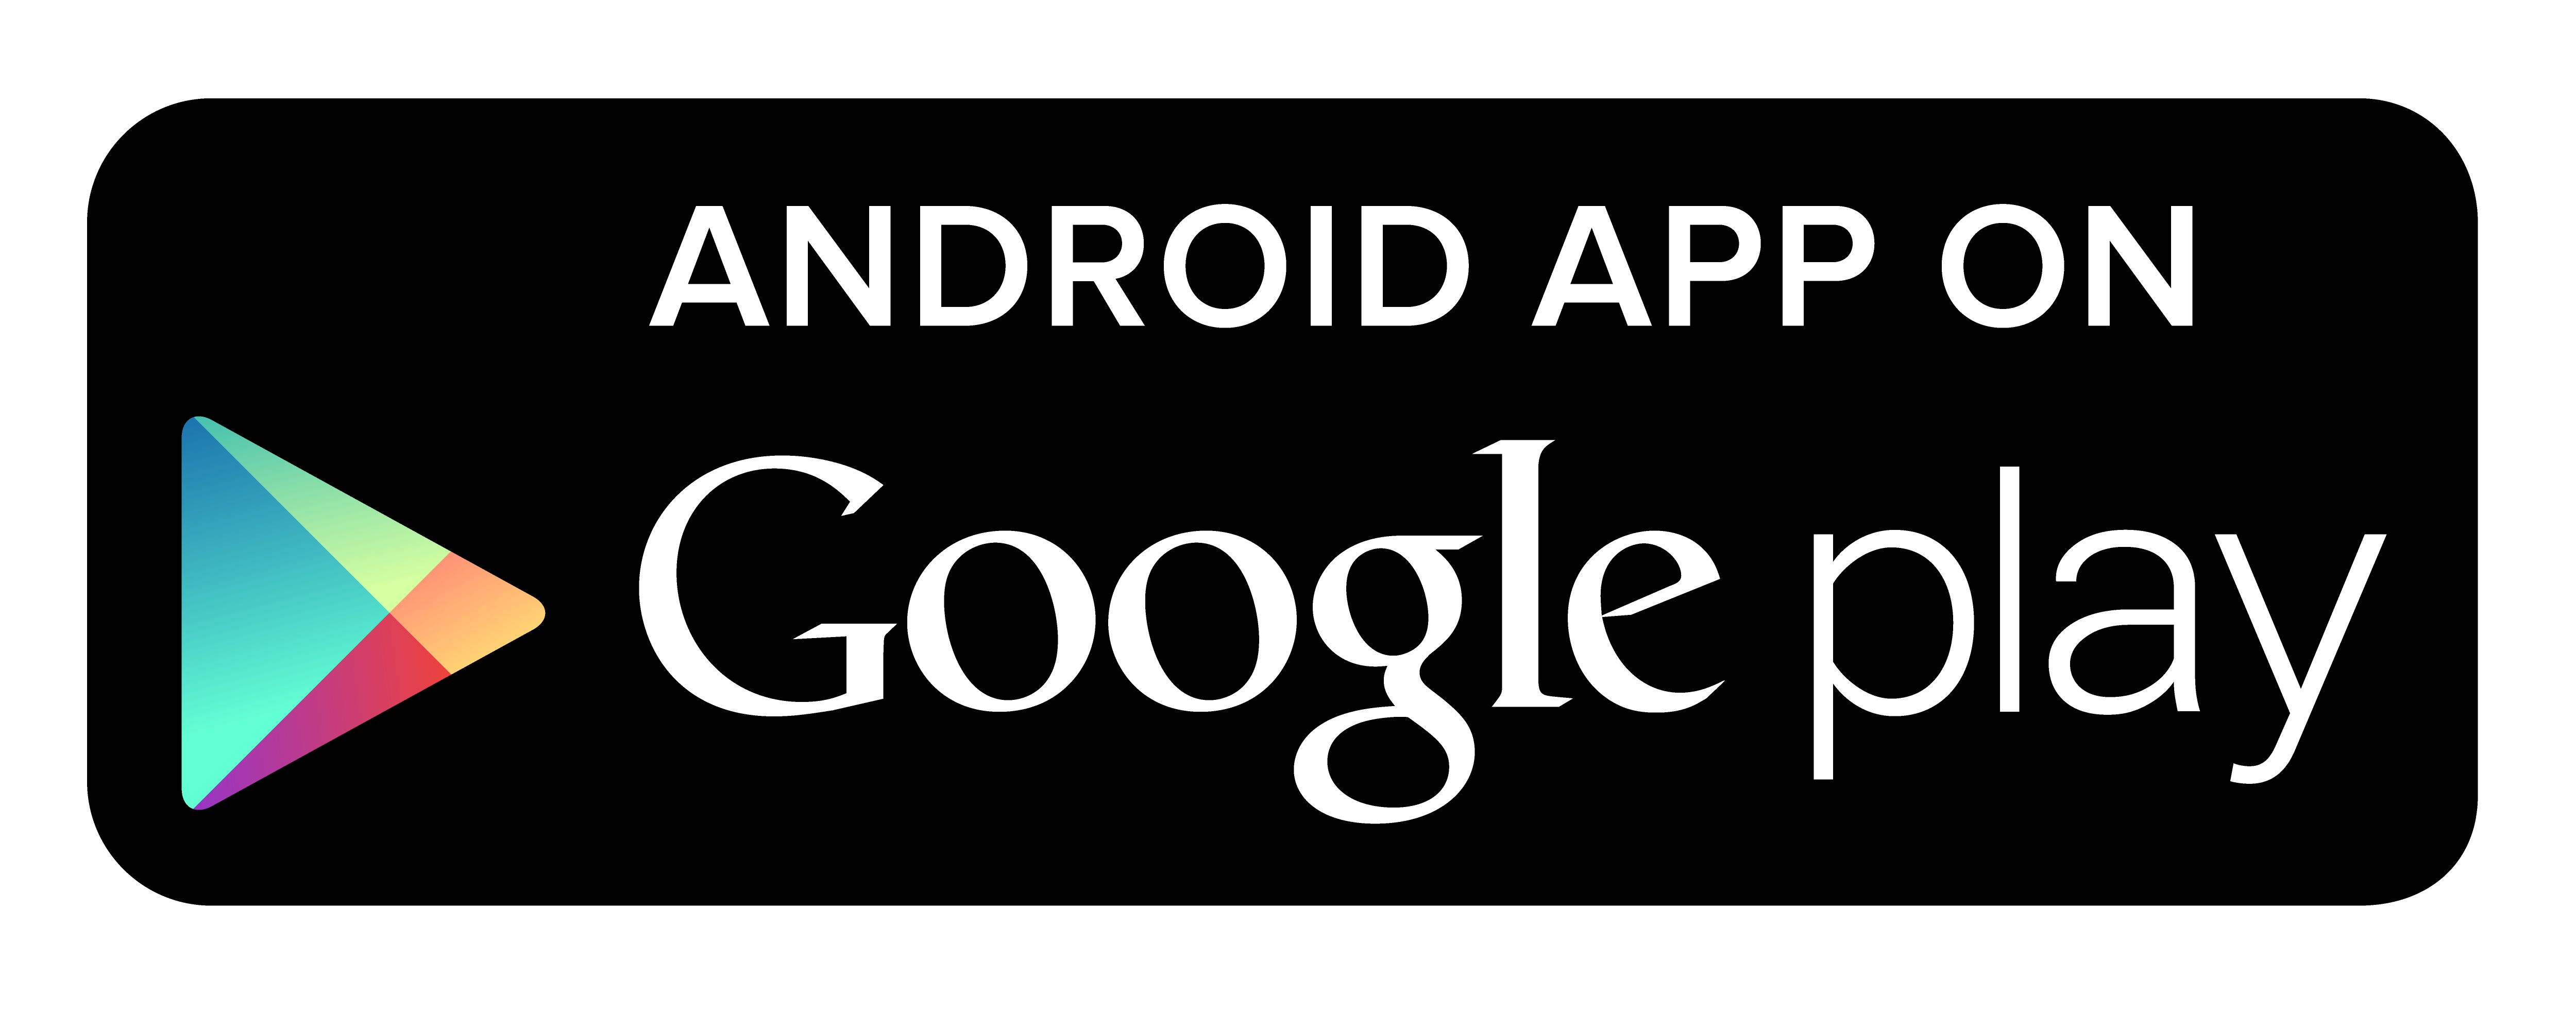 BELK Tile Android App